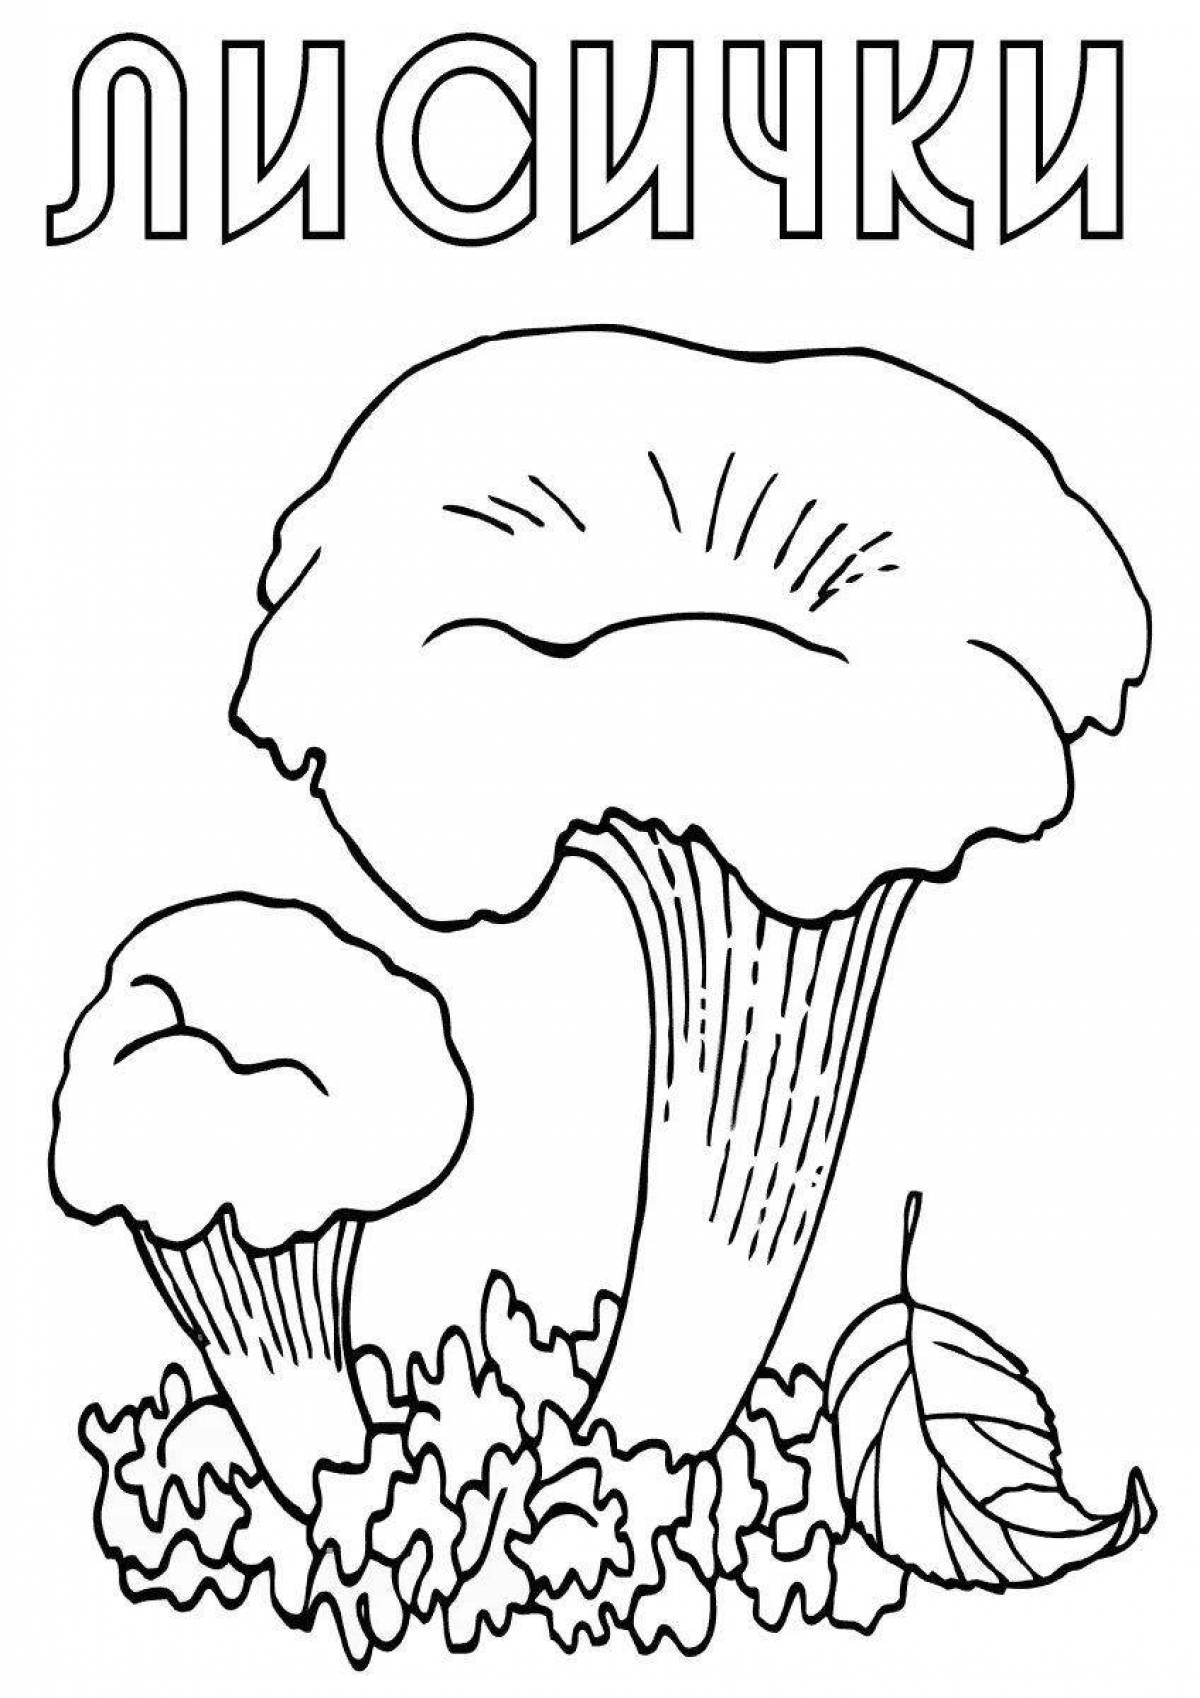 Fun mushroom coloring book for kids